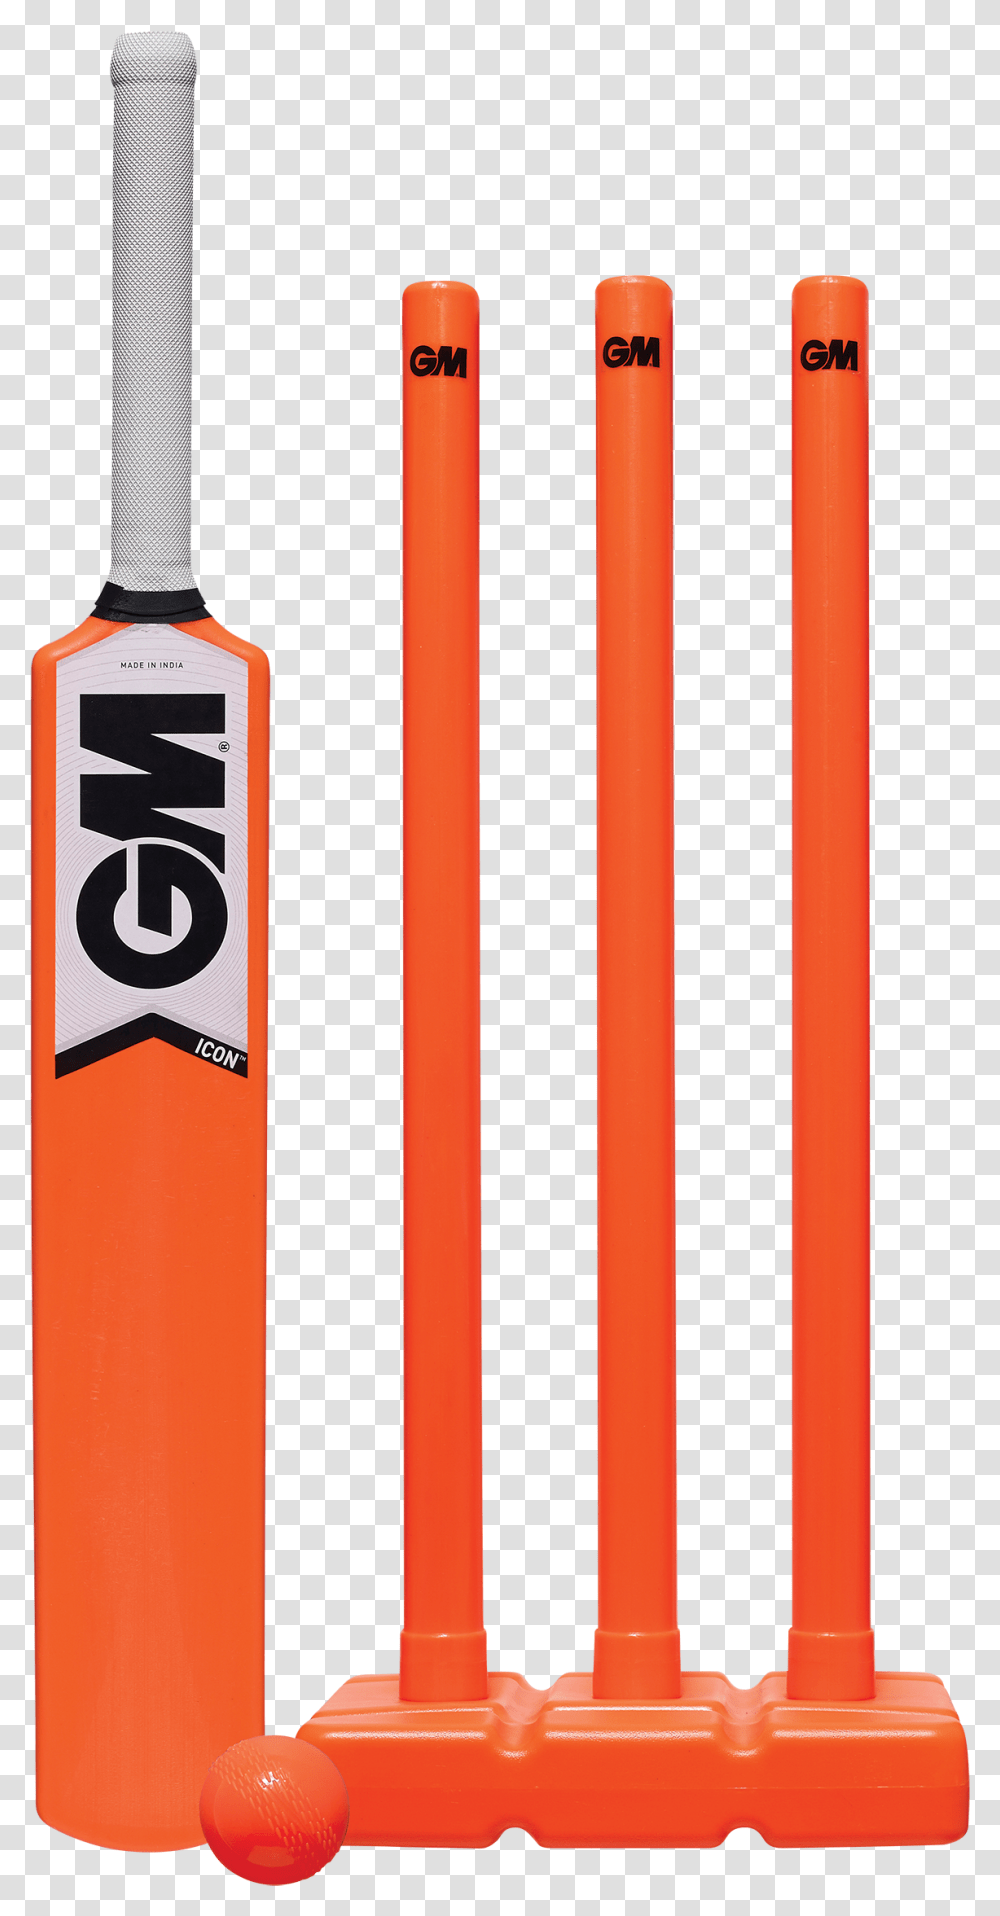 Cricket Bat Vector Plastic Cricket Bat And Ball, Prison, Logo Transparent Png